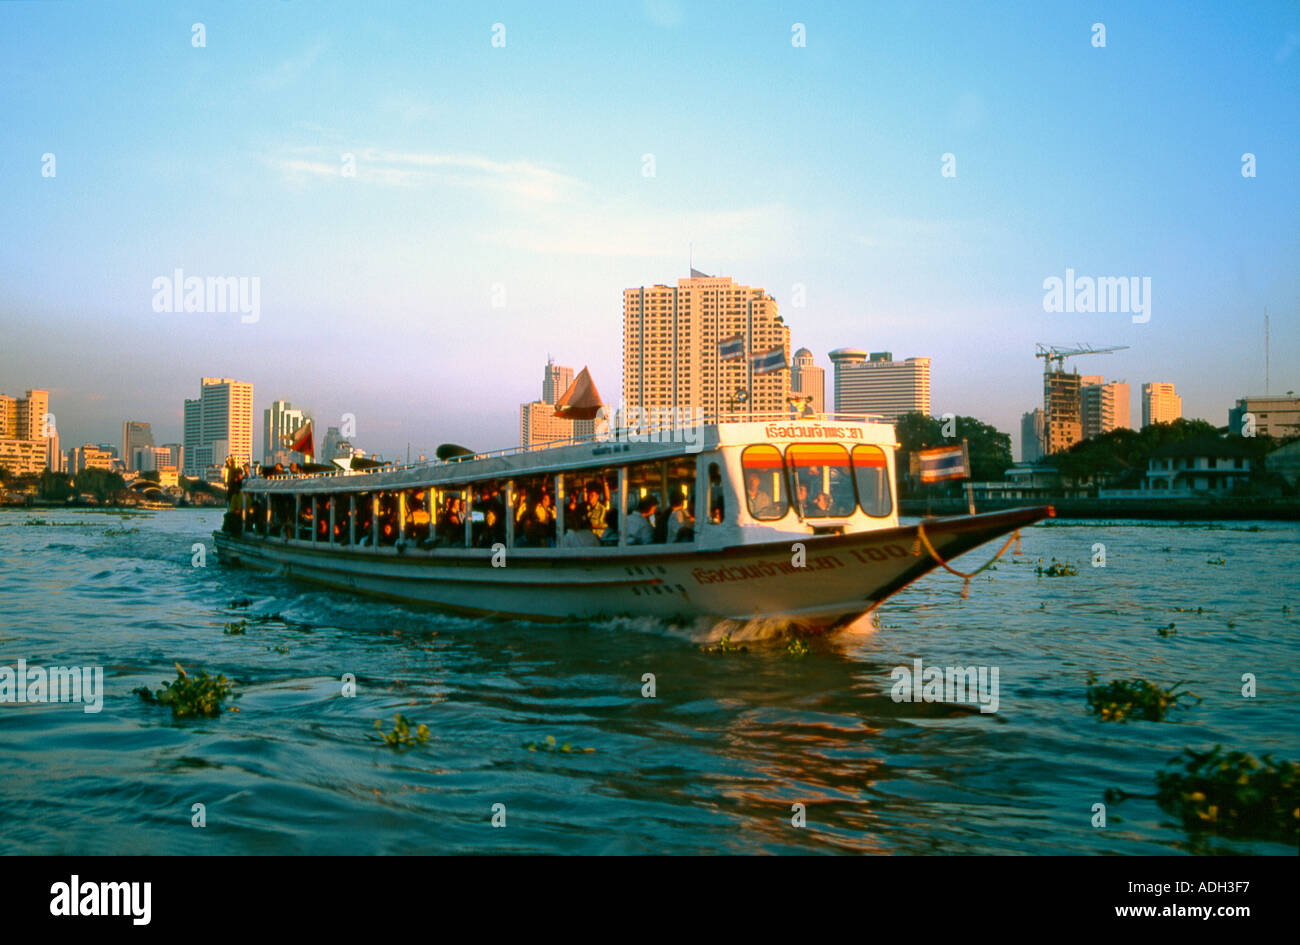 THA THAILAND Bangkok Menam Chao Phraya Boat Stock Photo